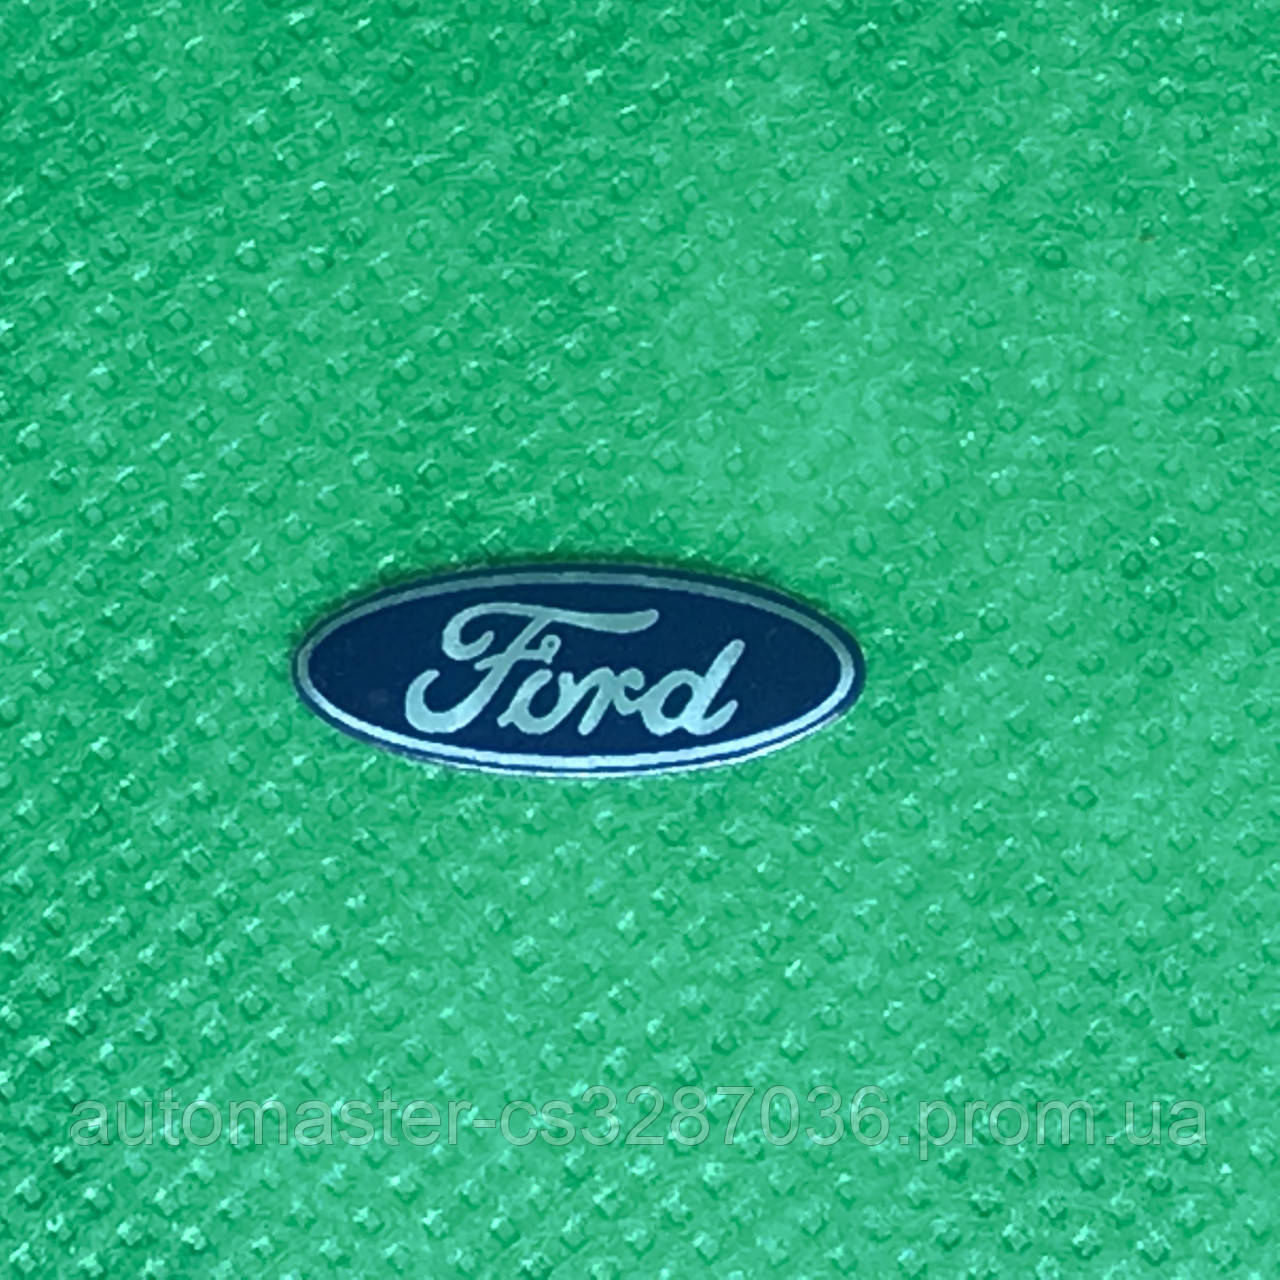 Логотип для авто ключа Ford Форд 18 мм